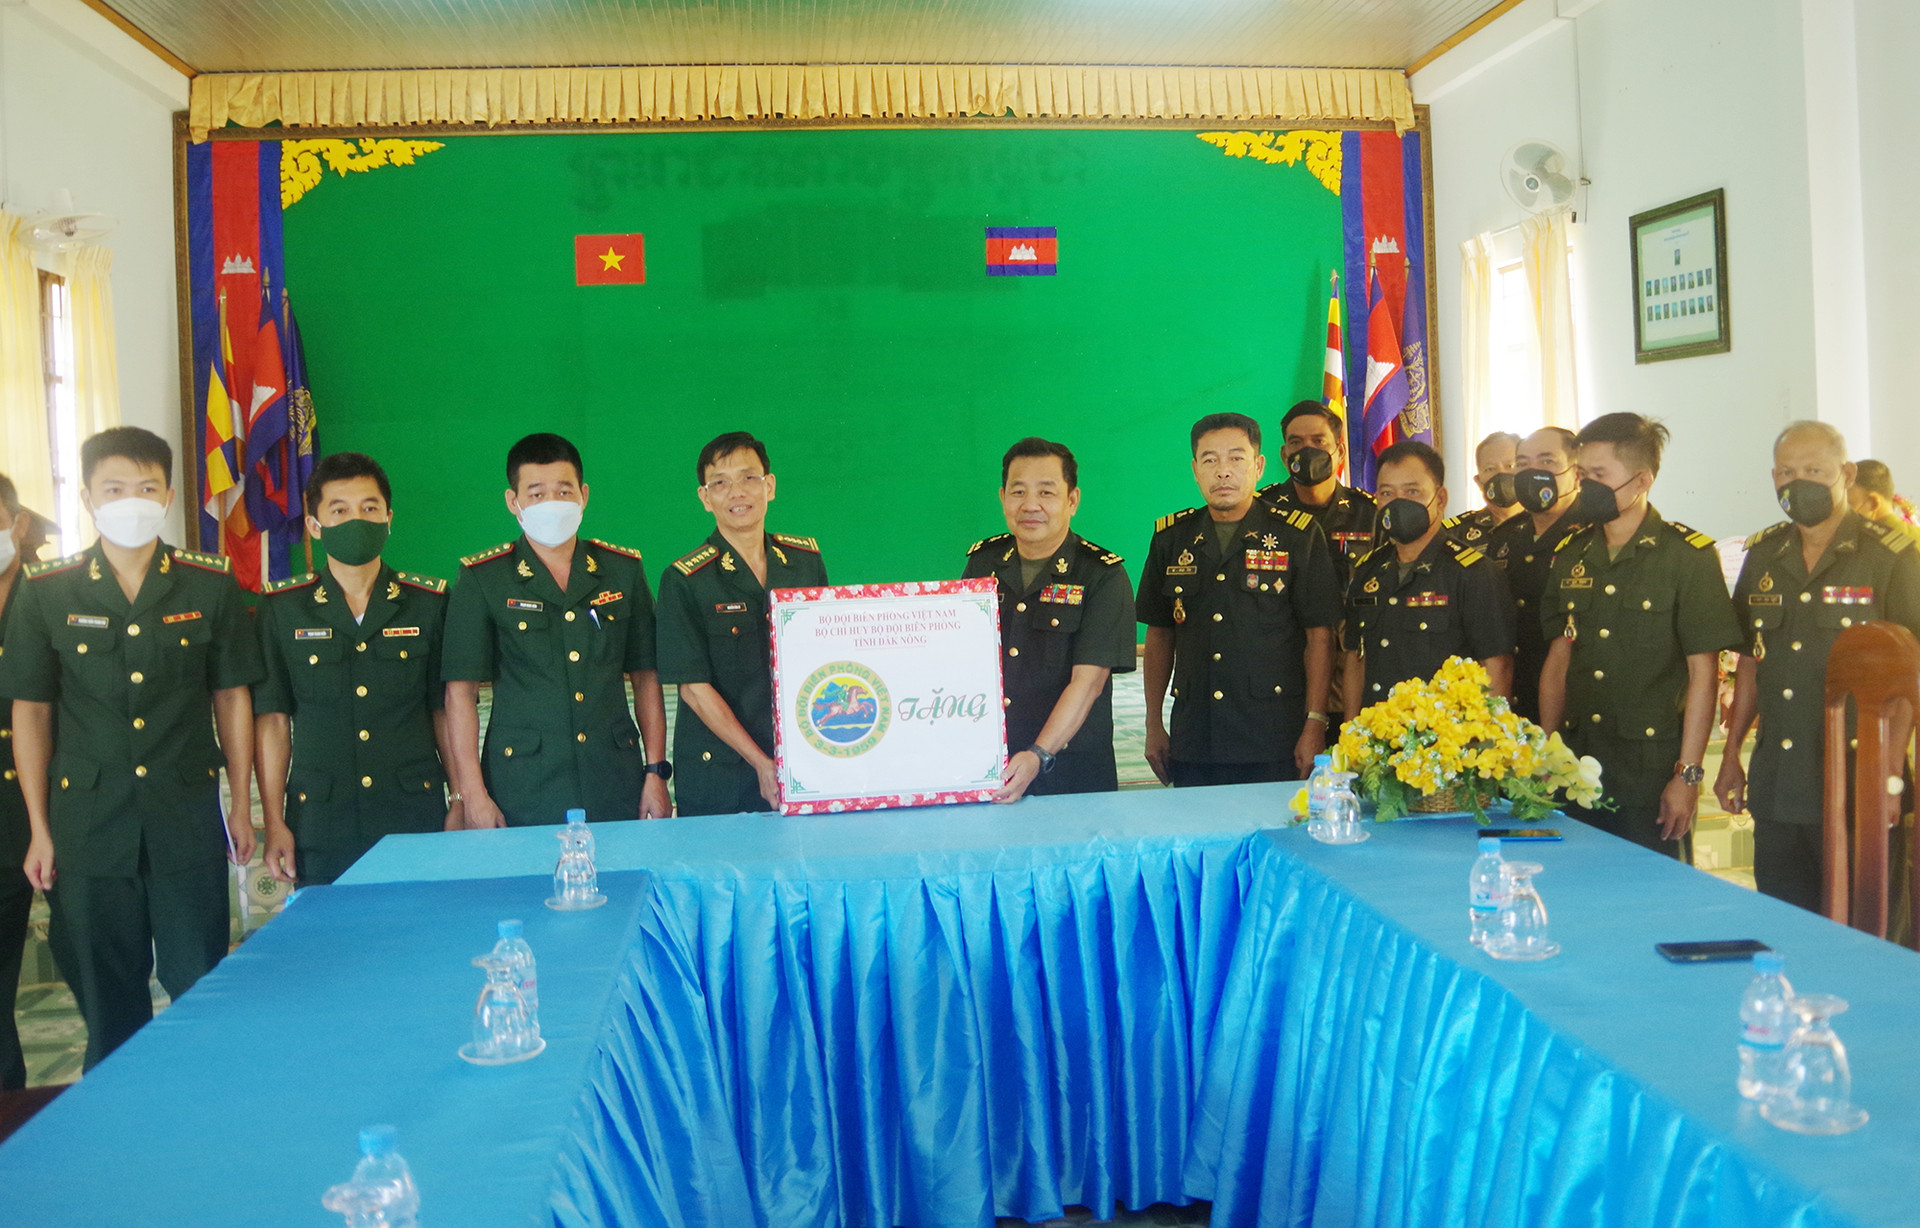 Đại tá Nguyễn Văn Lư, Chỉ huy trưởng BĐBP Đăk Nông tặng quà lực lượng Tiểu khu Quân sự tỉnh Mondulkiri, Campuchia.